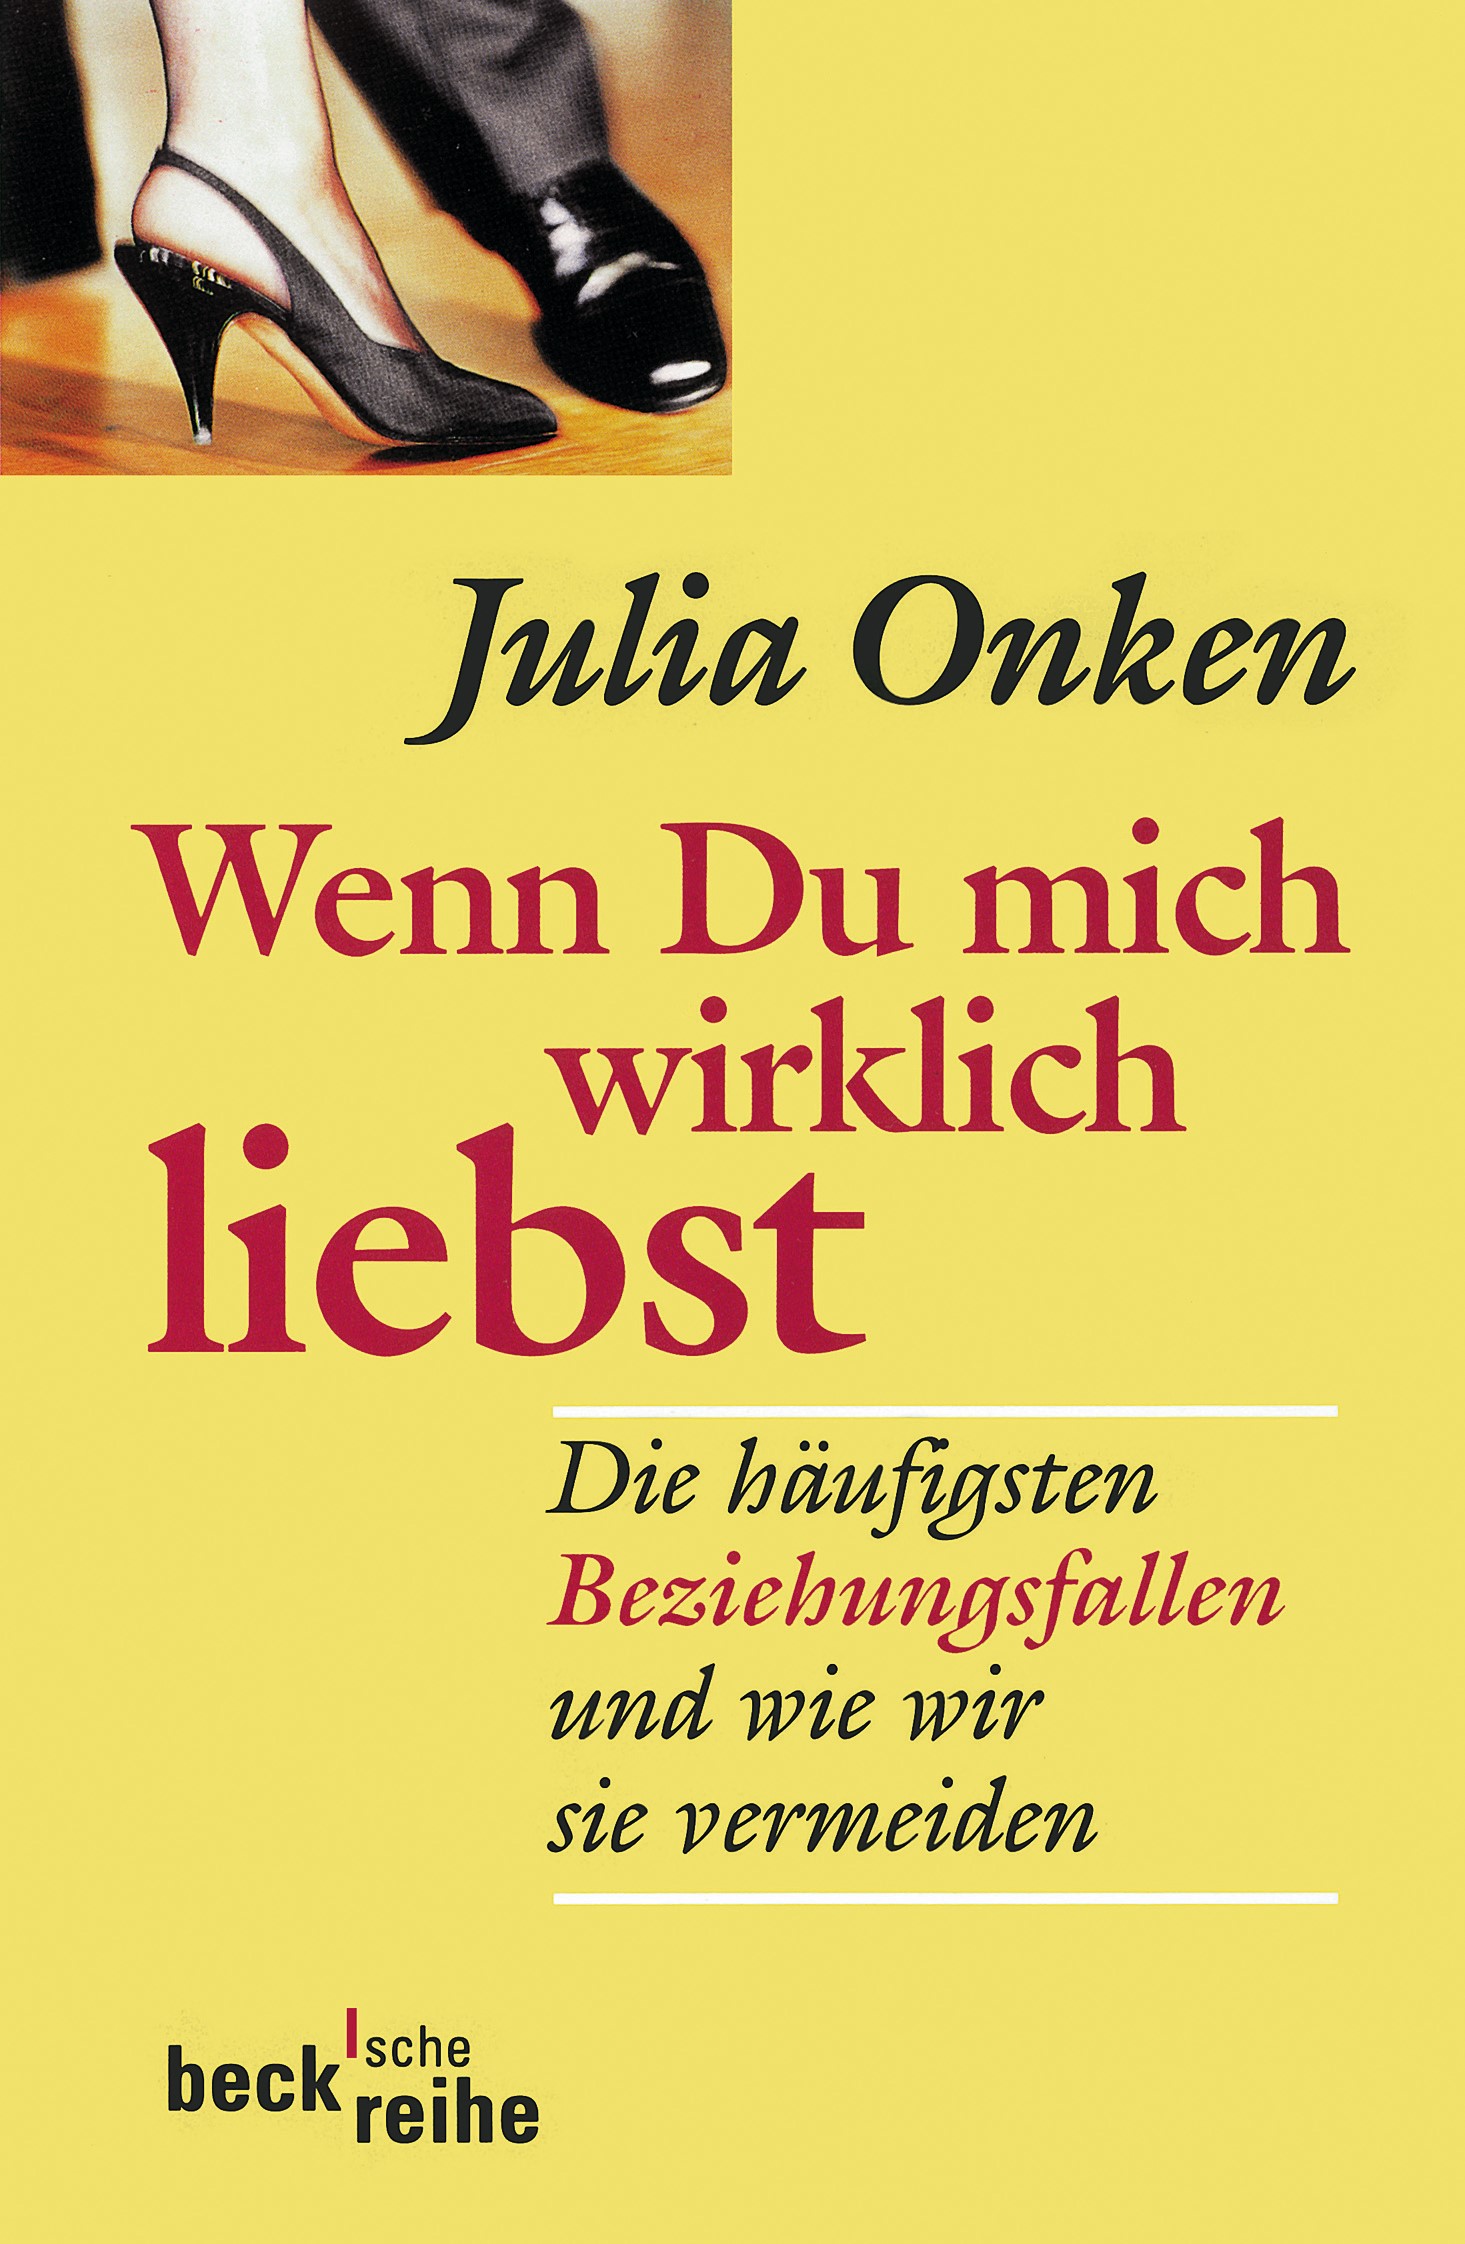 Cover: Onken, Julia, Wenn du mich wirklich liebst